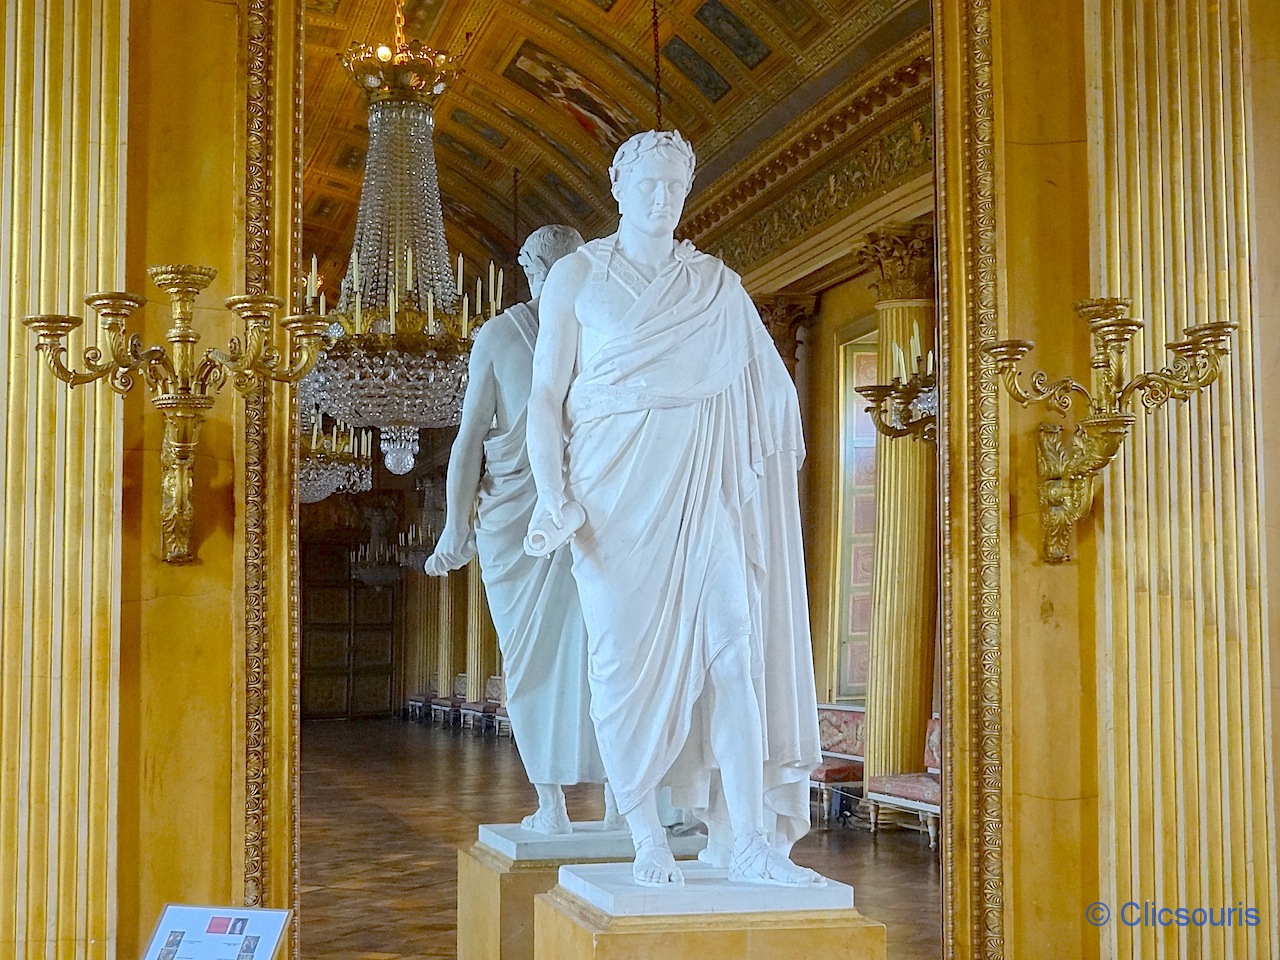 Palais de Compiègne